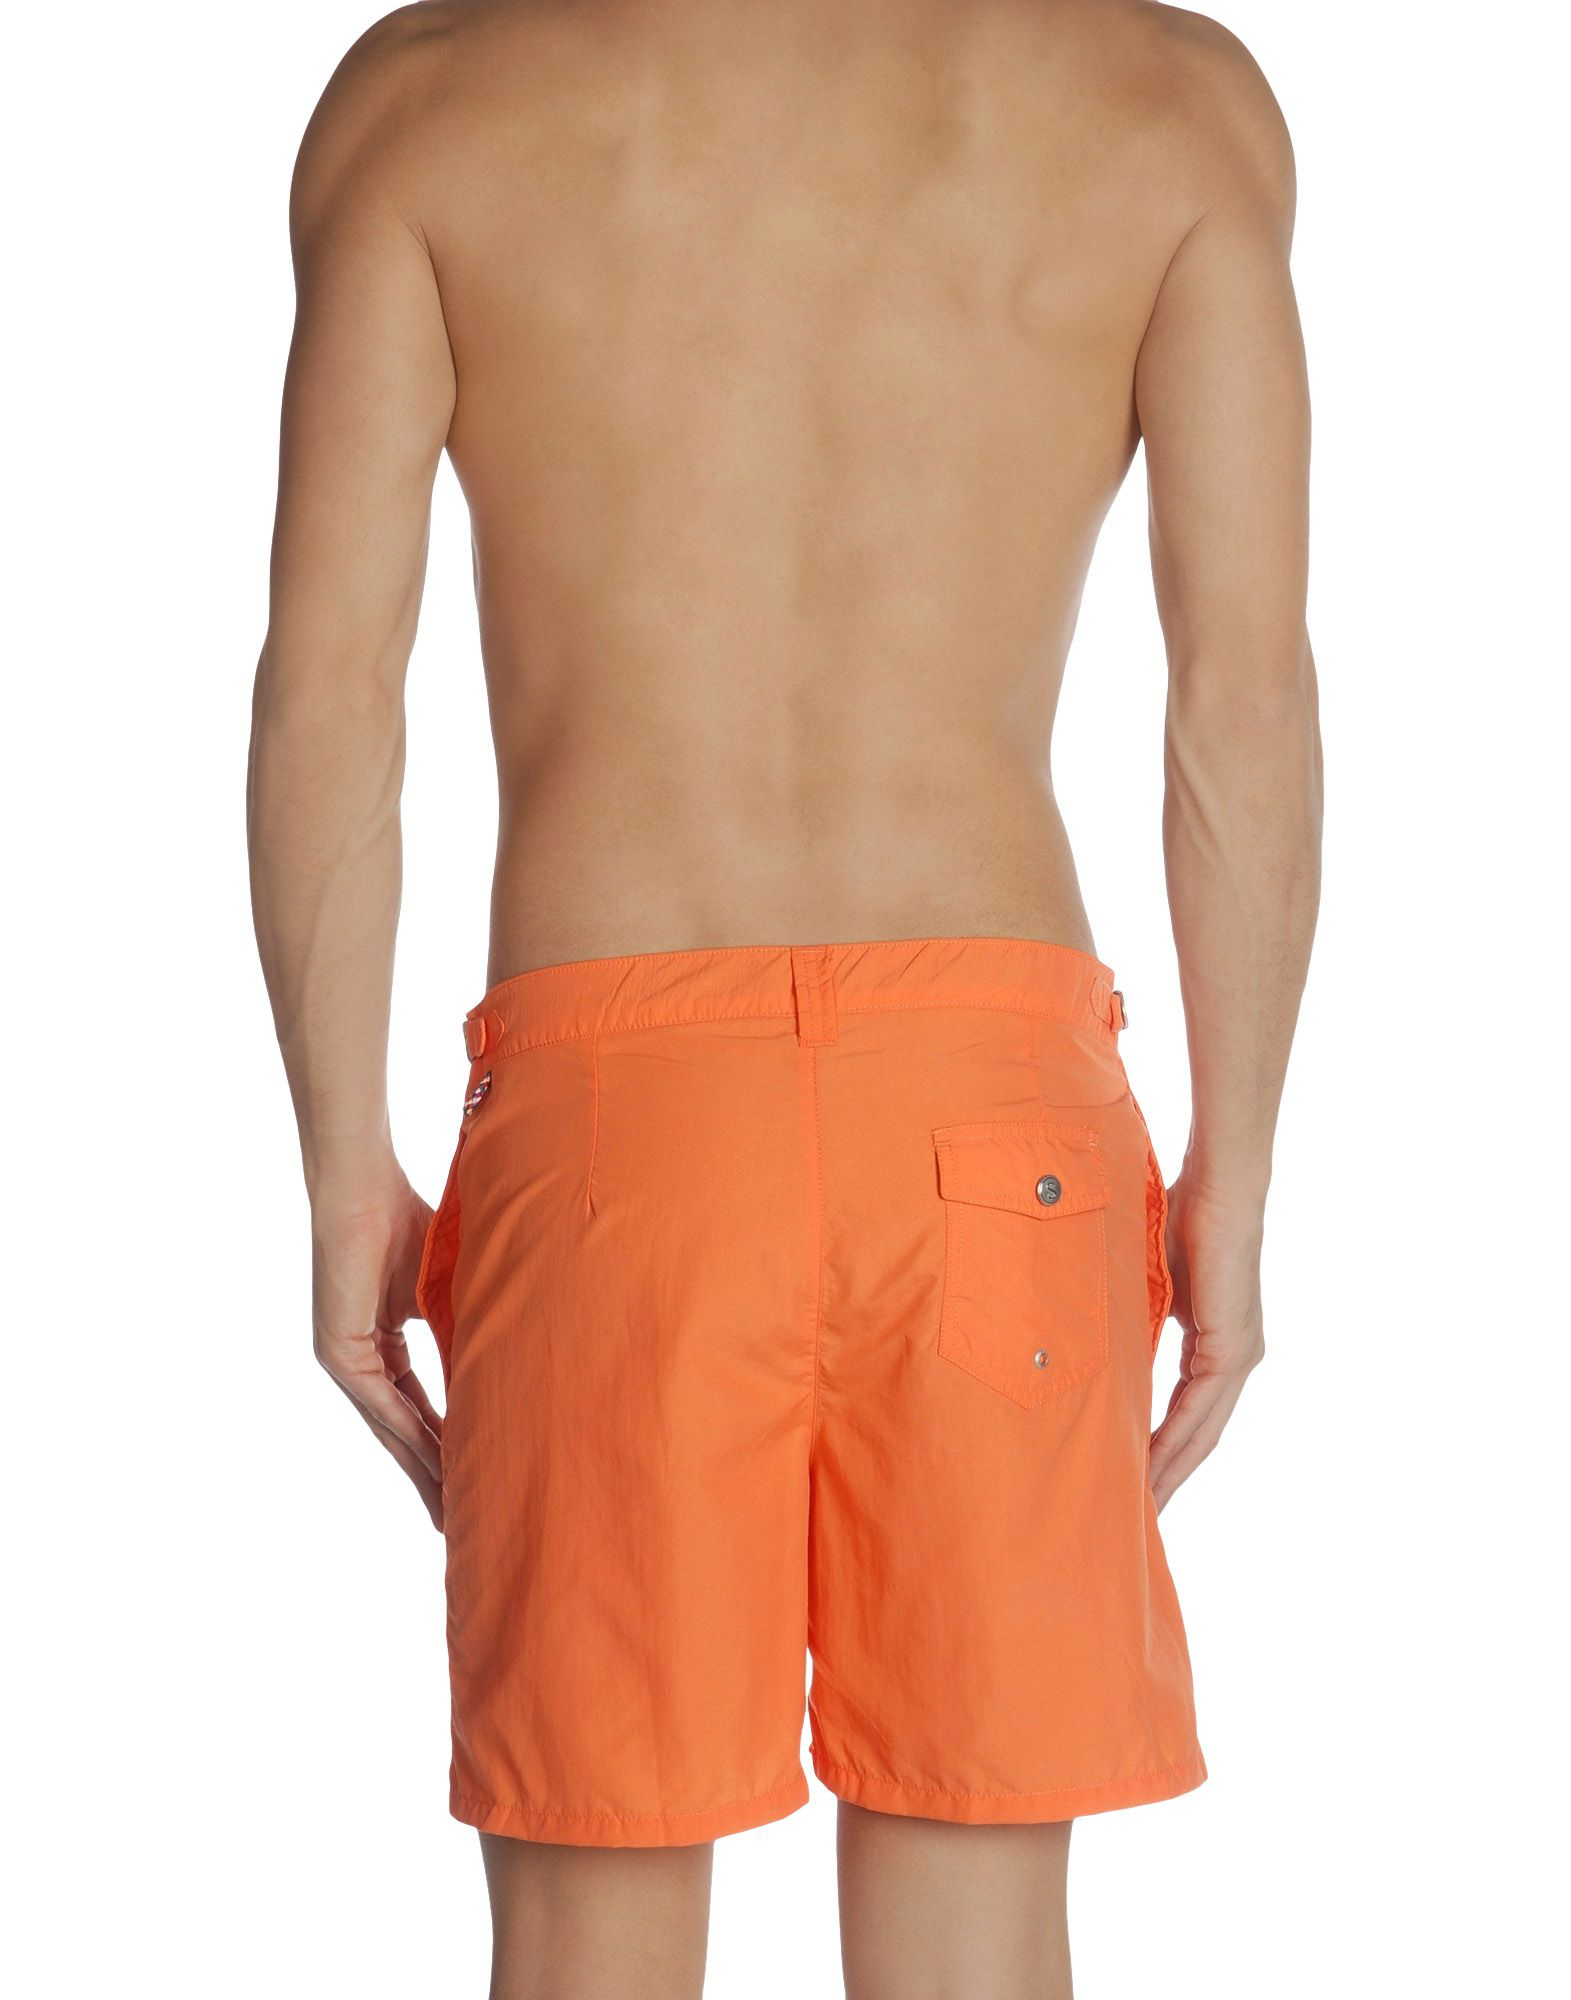 Lyst - Swim-ology Swimming Trunks in Orange for Men